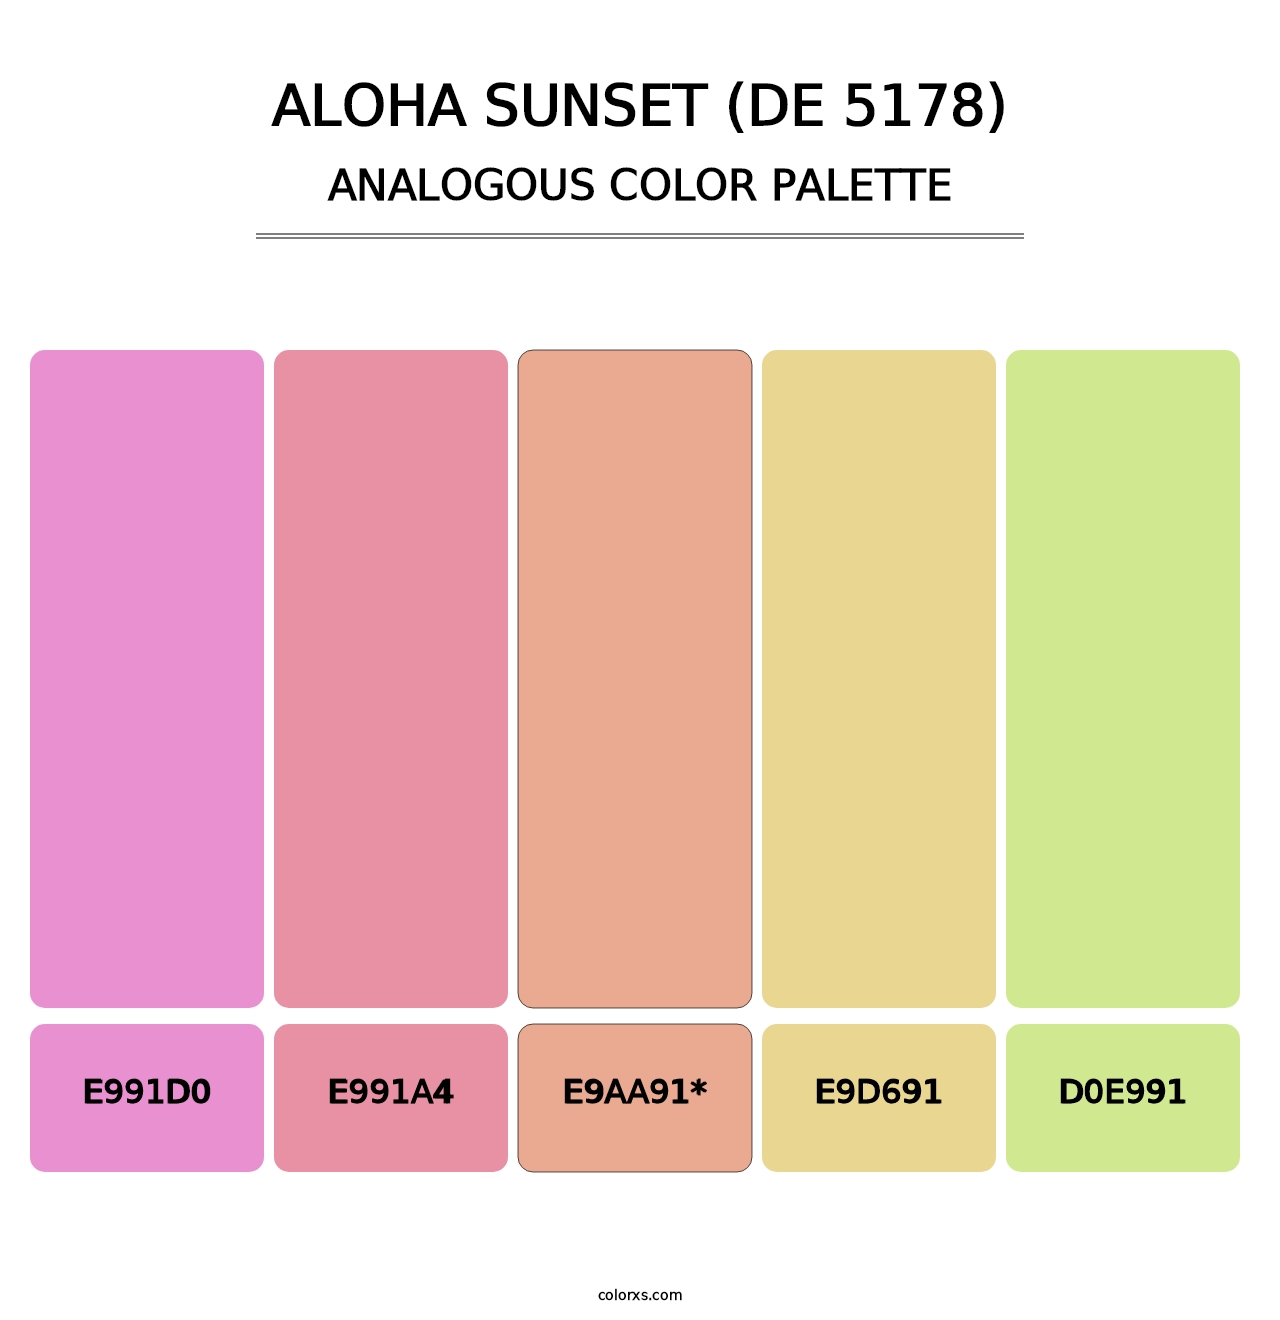 Aloha Sunset (DE 5178) - Analogous Color Palette